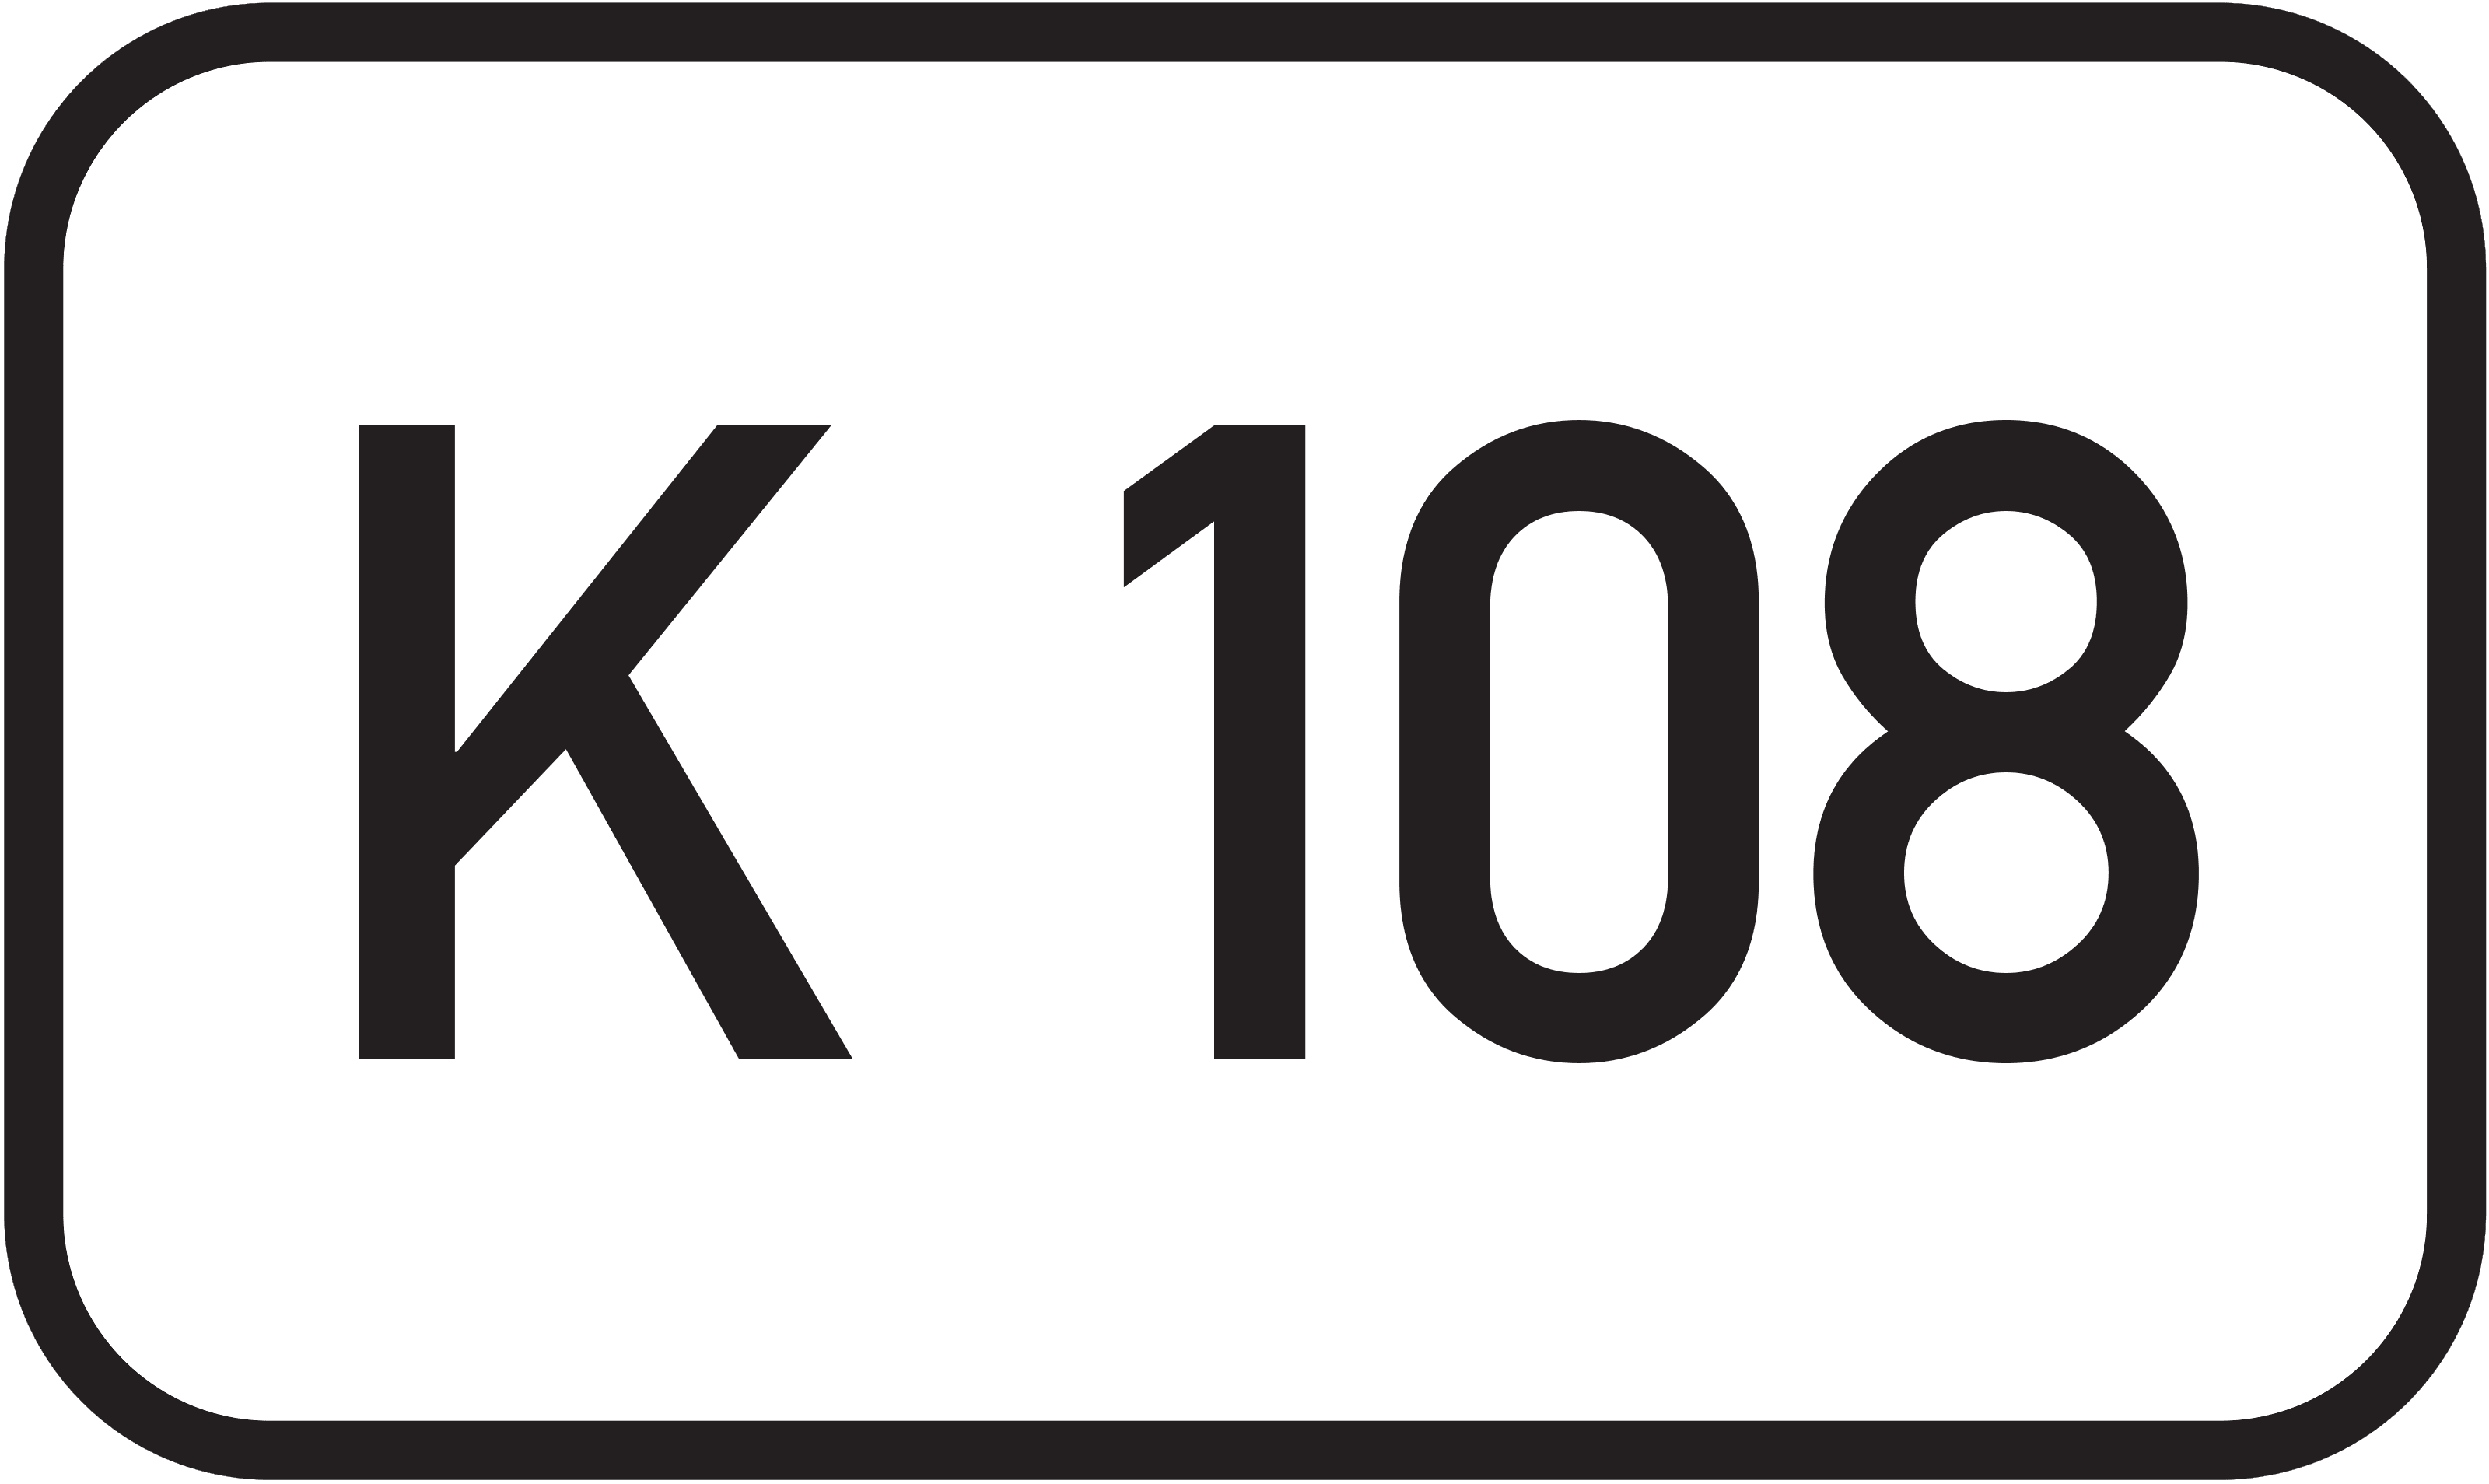 Kreisstraße K 108